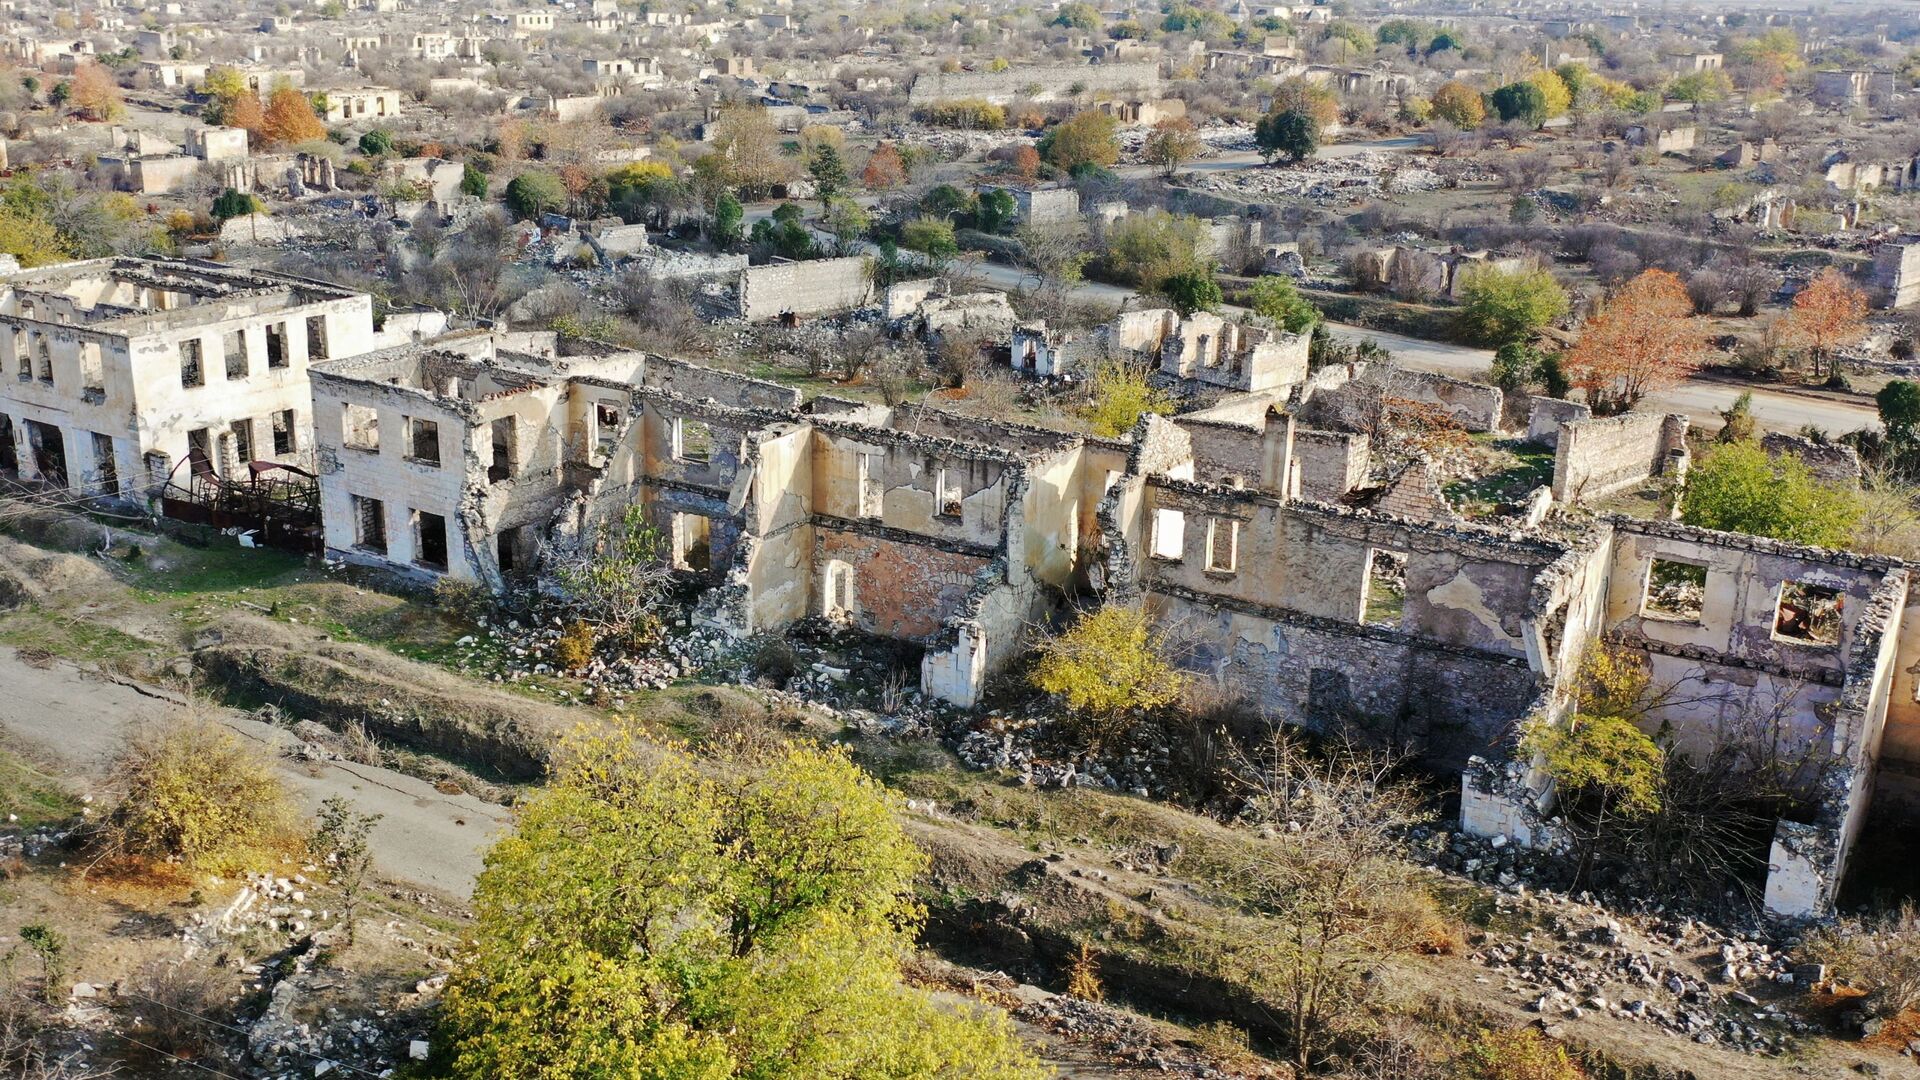 Вид на разрушенный город Агдам с высоты птичьего полета - Sputnik Азербайджан, 1920, 01.08.2021